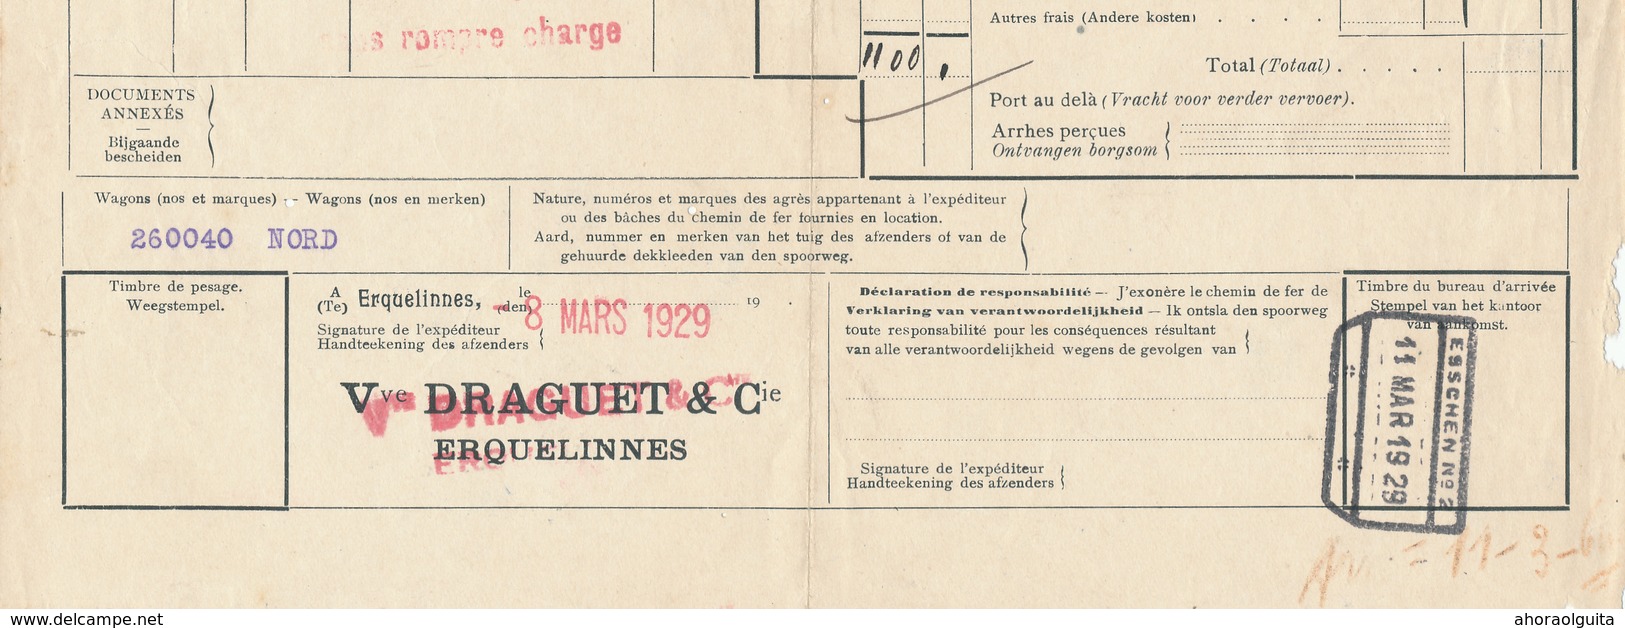 564/28 - Lettre De Voiture Cachet De Gare NORD BELGE ERQUELINNES Factage 1929 - Expéd. Tourteaux , Vve Draguet - Nord Belge